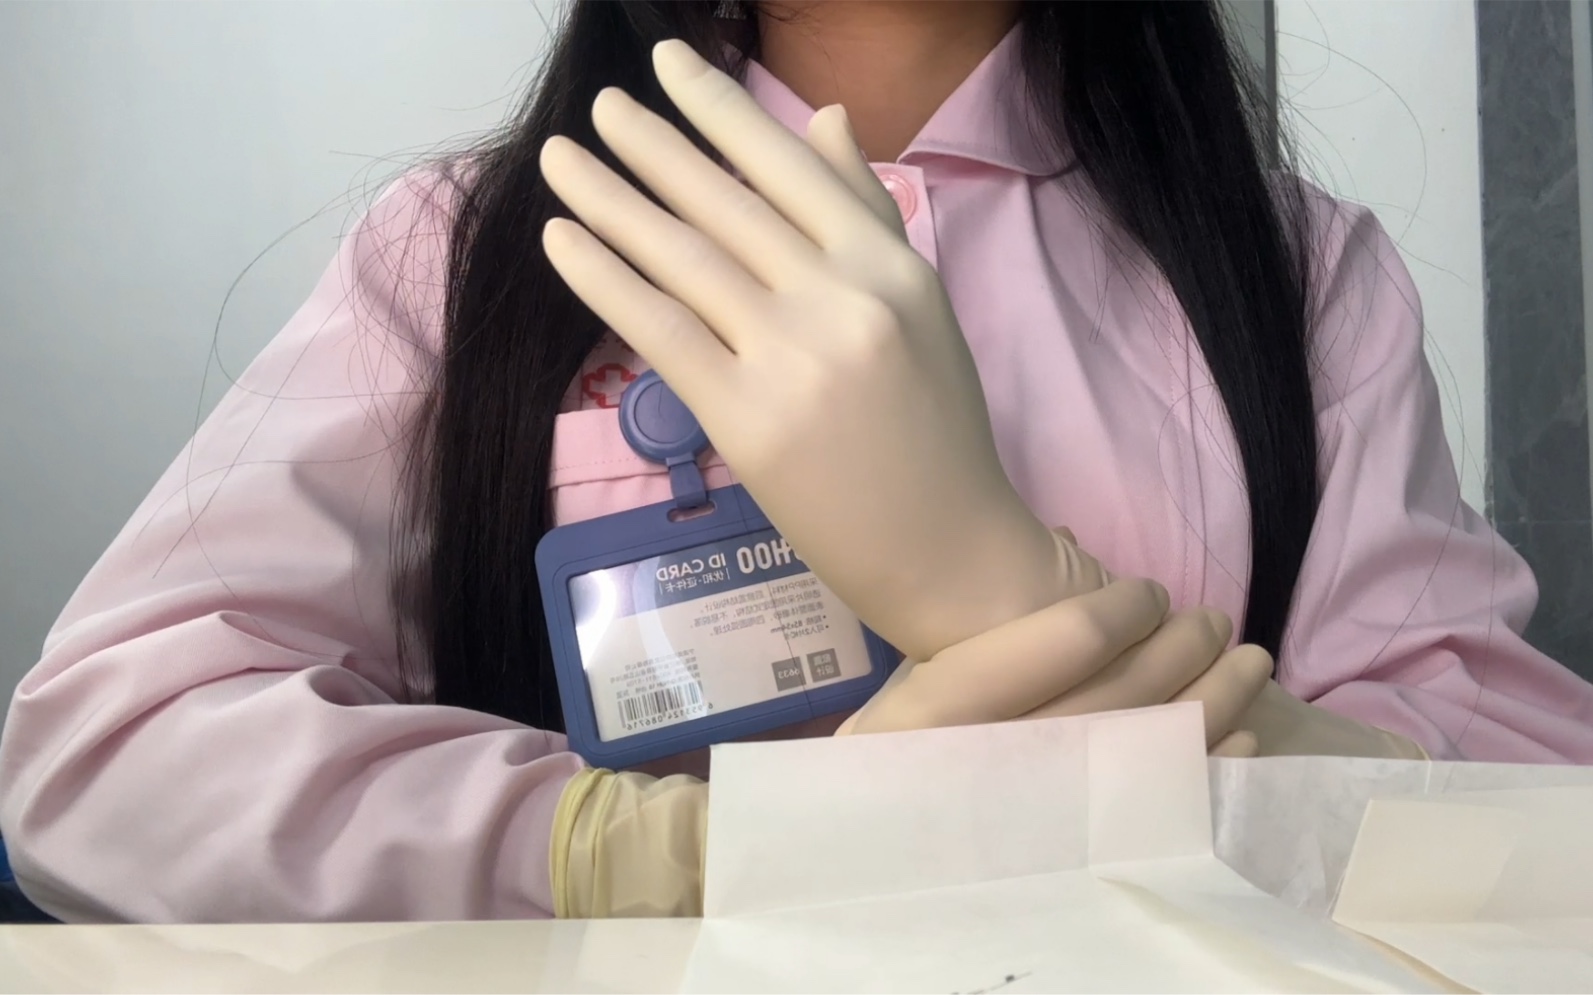 护士小姐姐试戴日本三兴乳胶手套